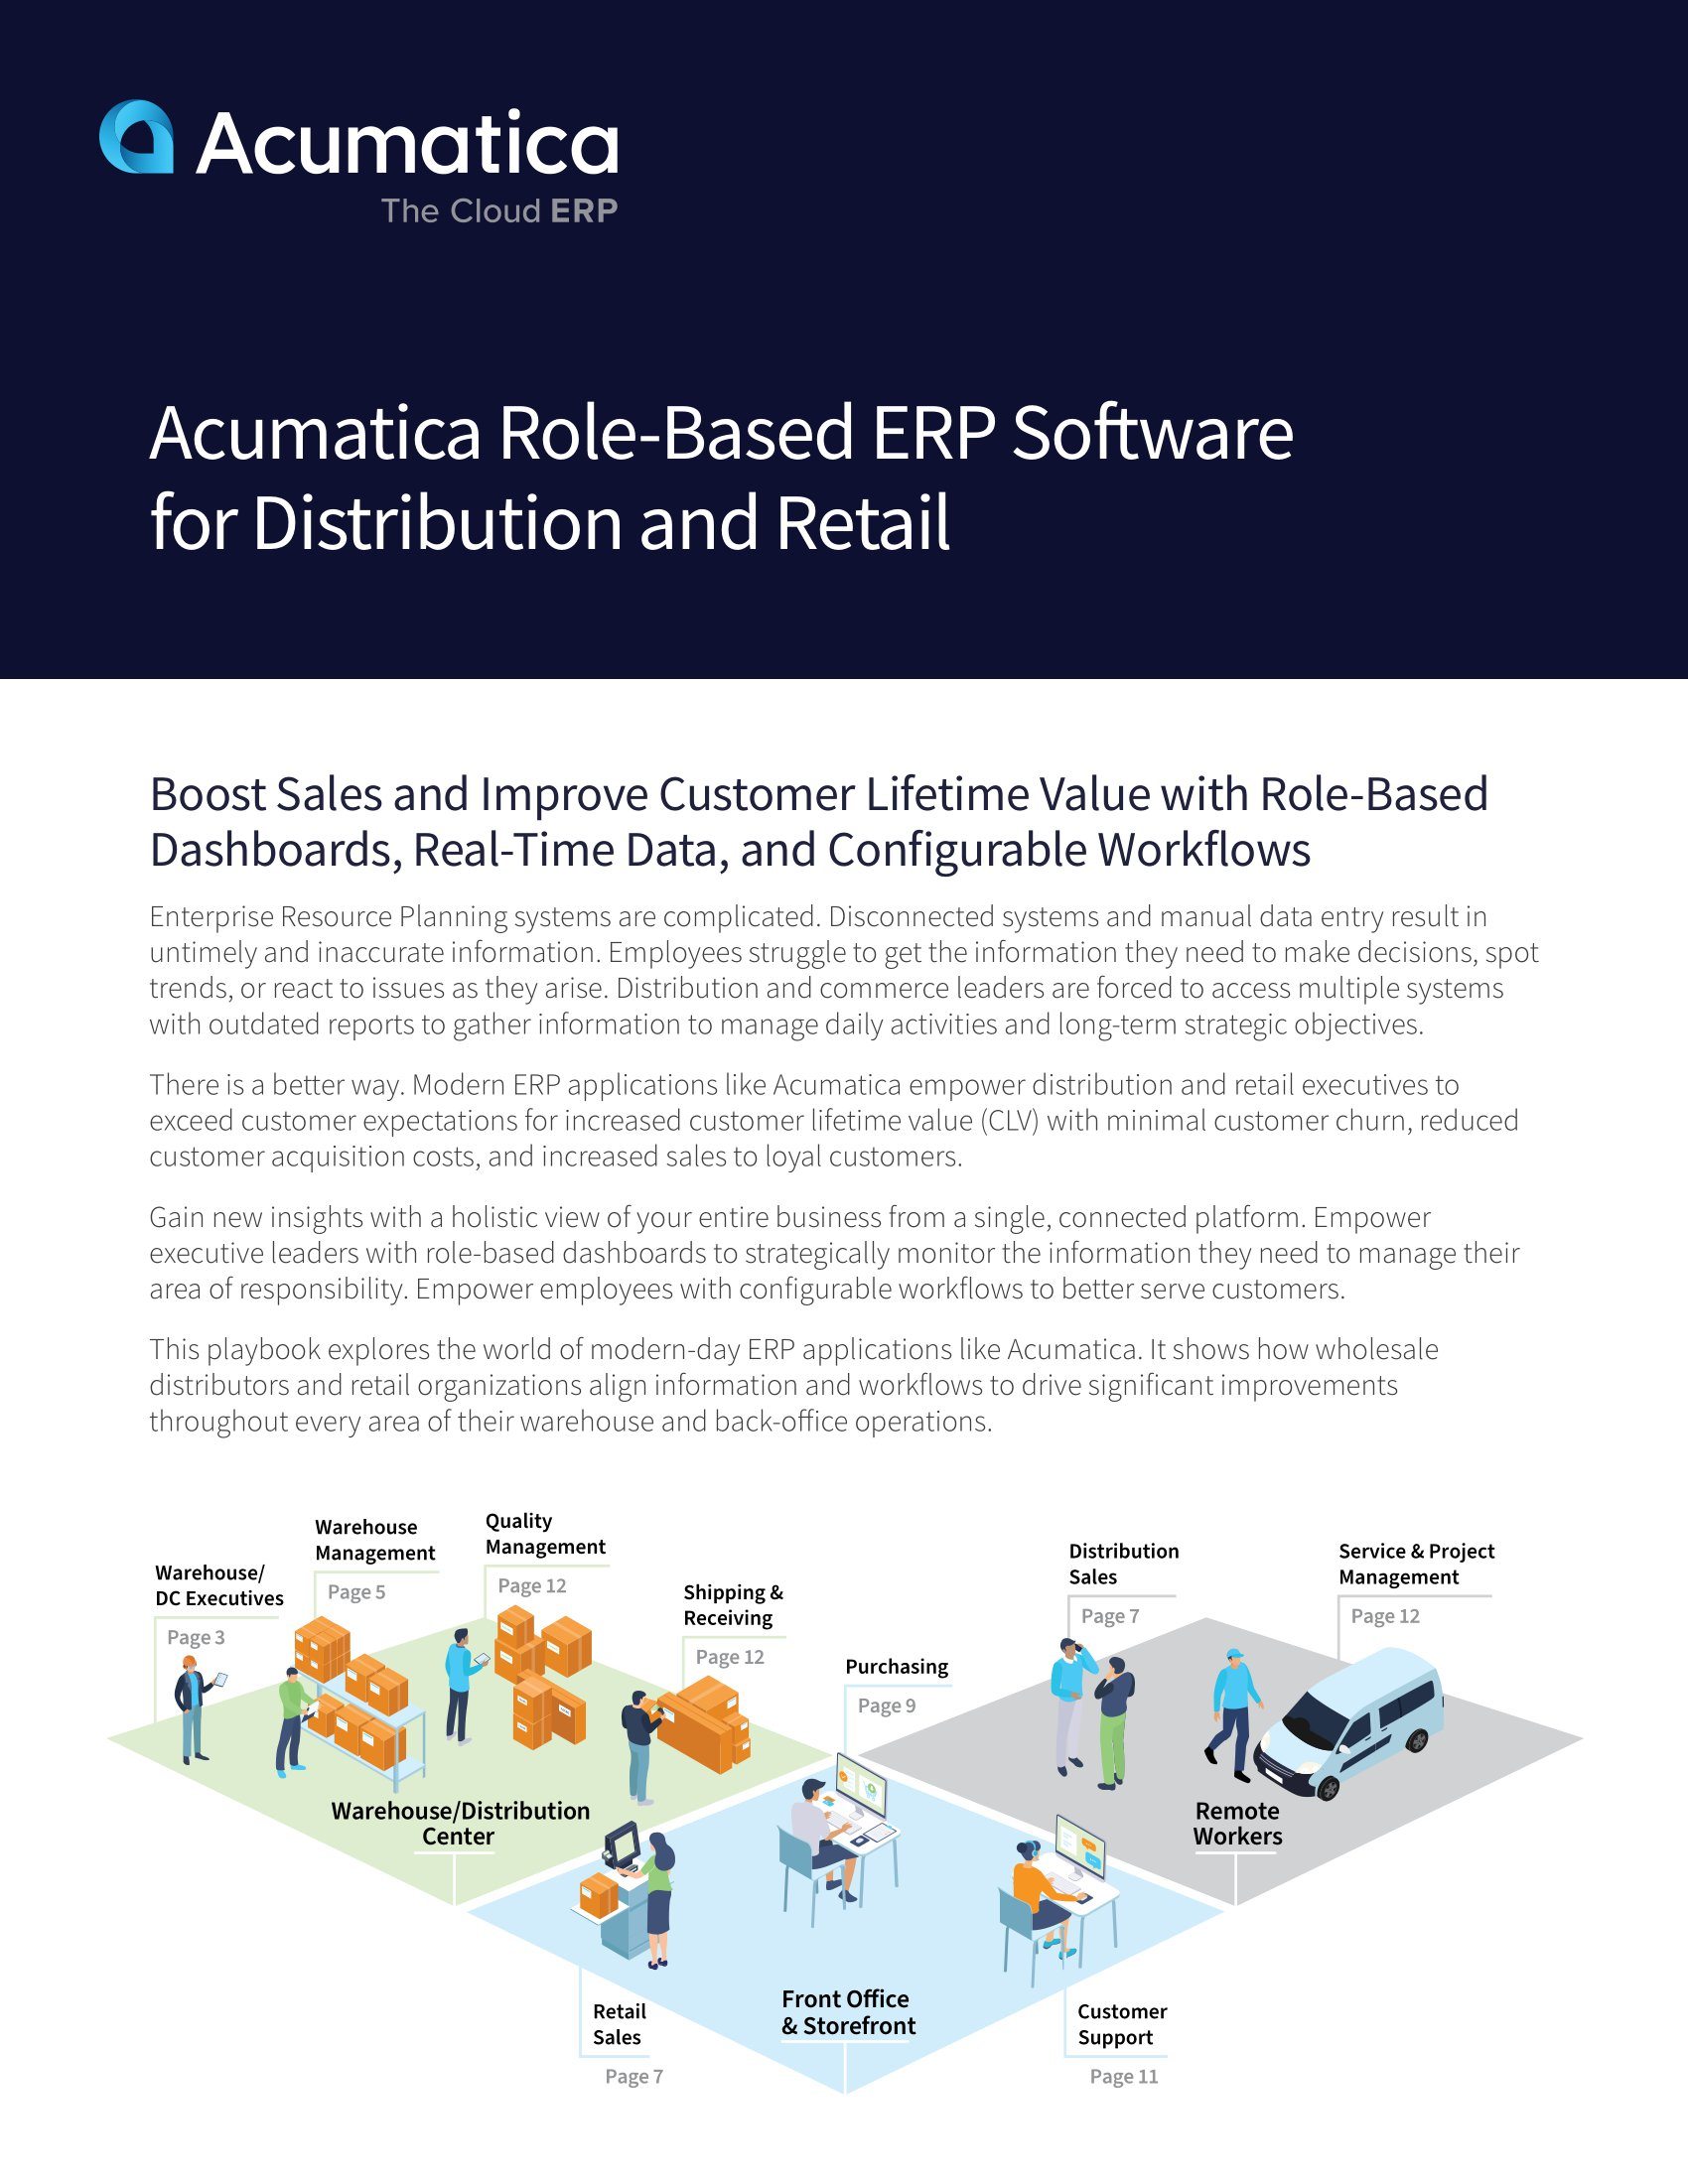 Choisissez un logiciel ERP moderne pour la distribution en gros et la vente au détail